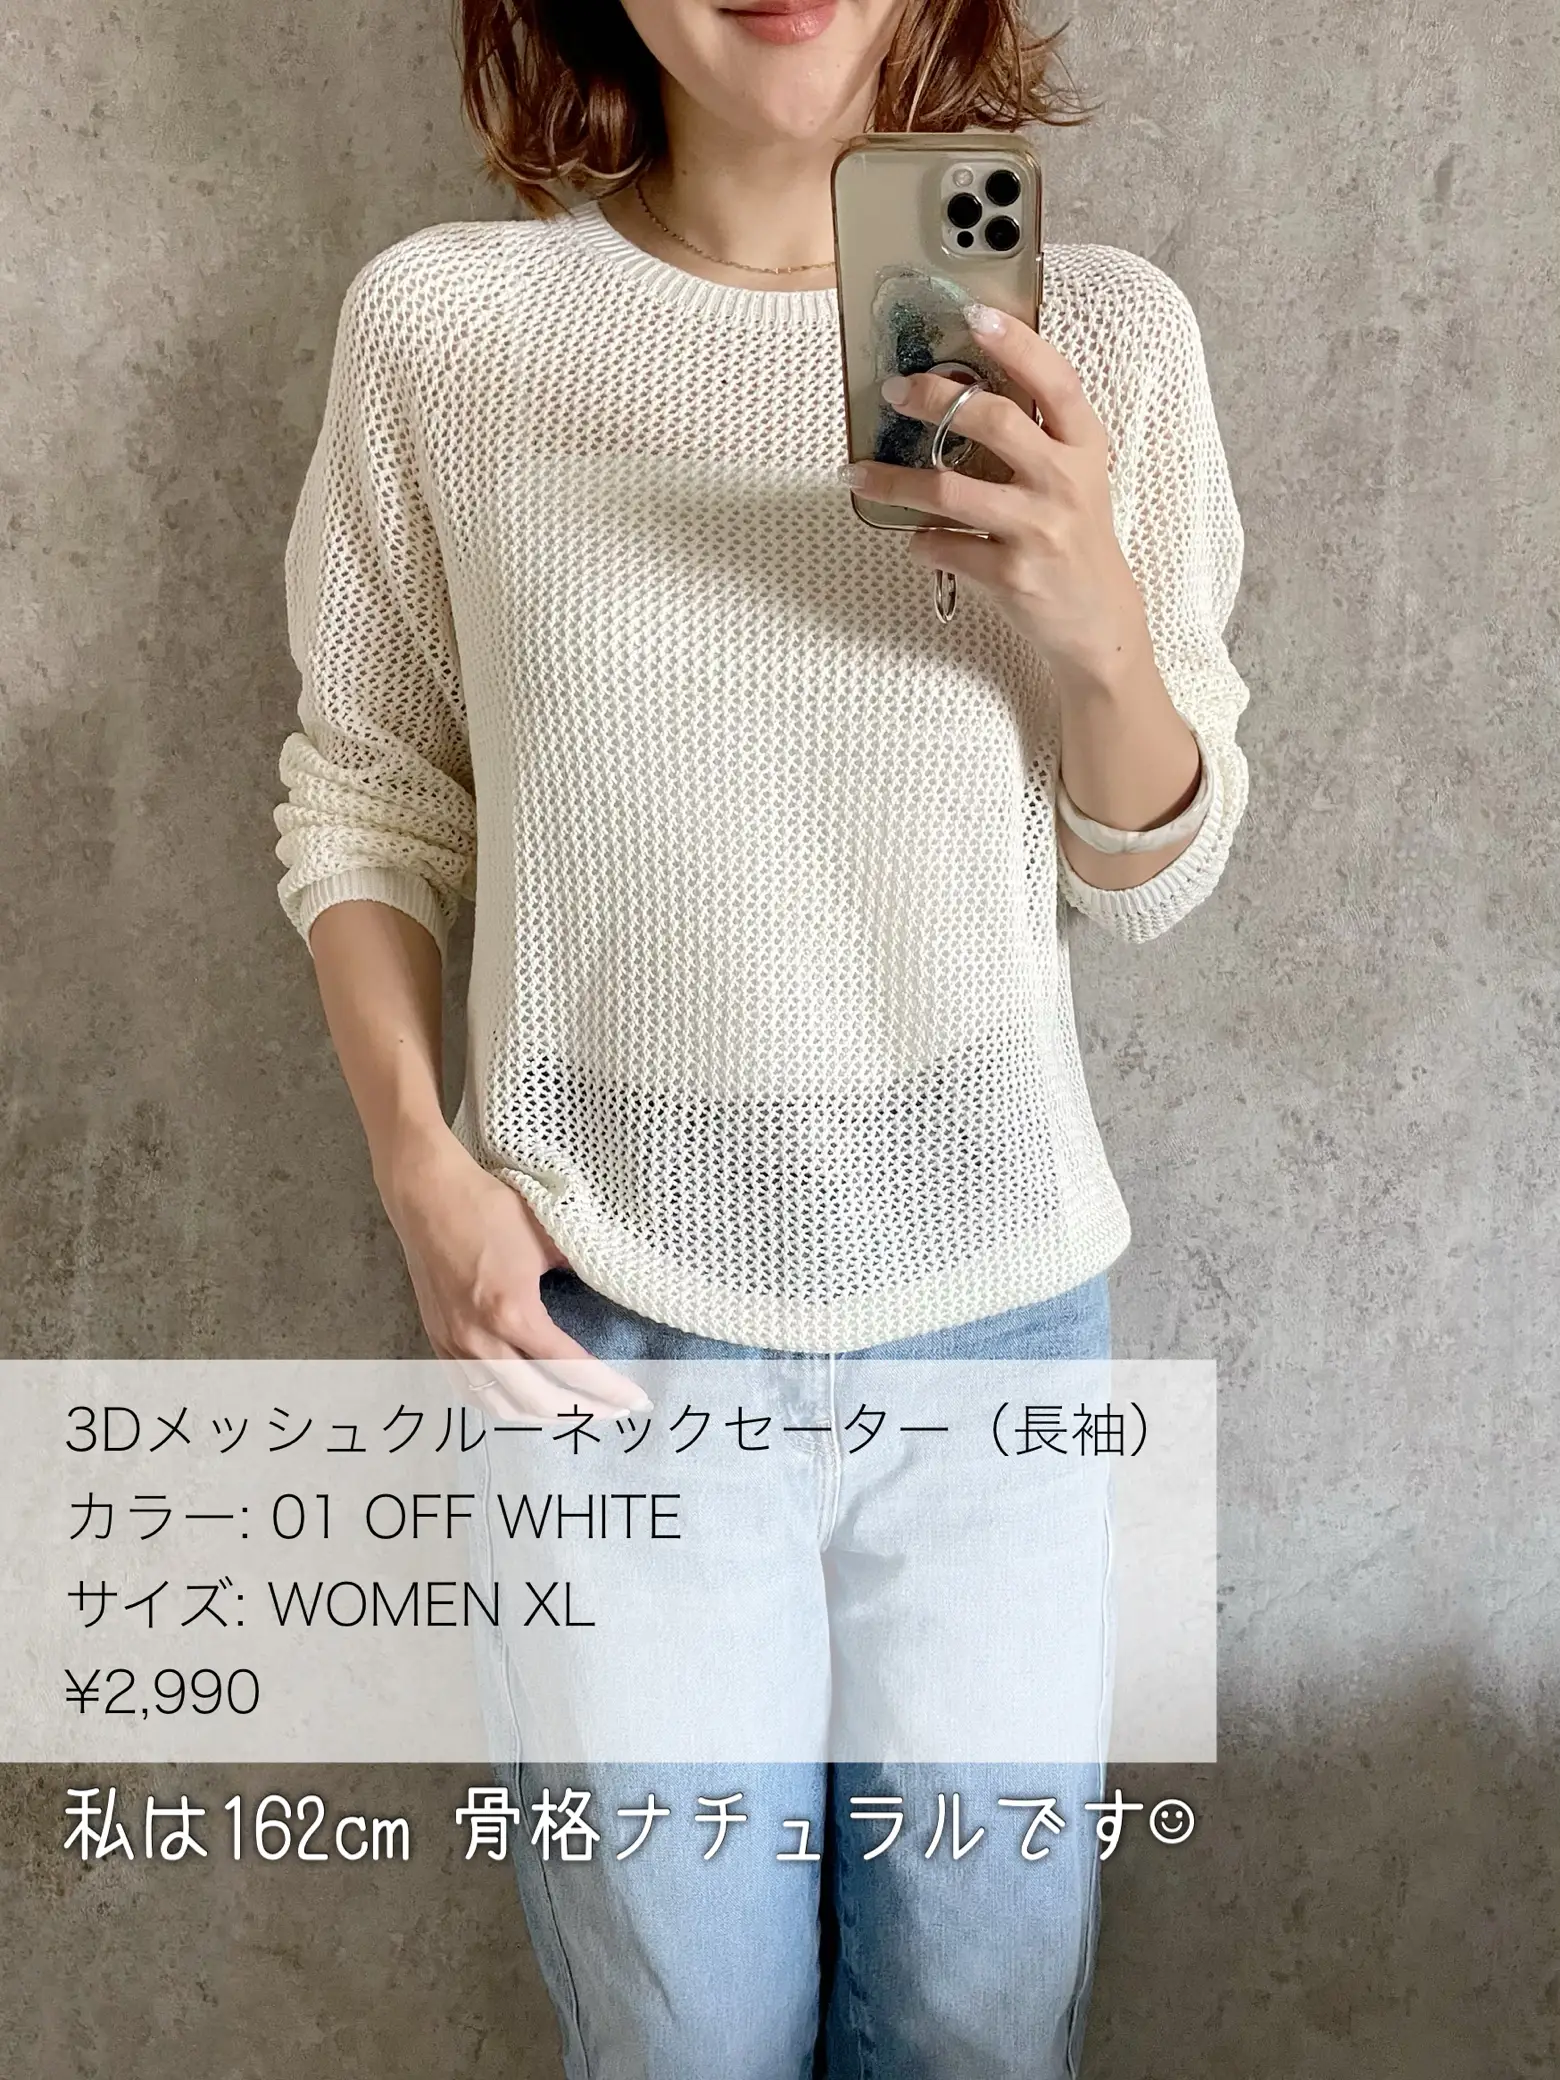 UNIQLO 3Dメッシュクルーネックセーター - ニット